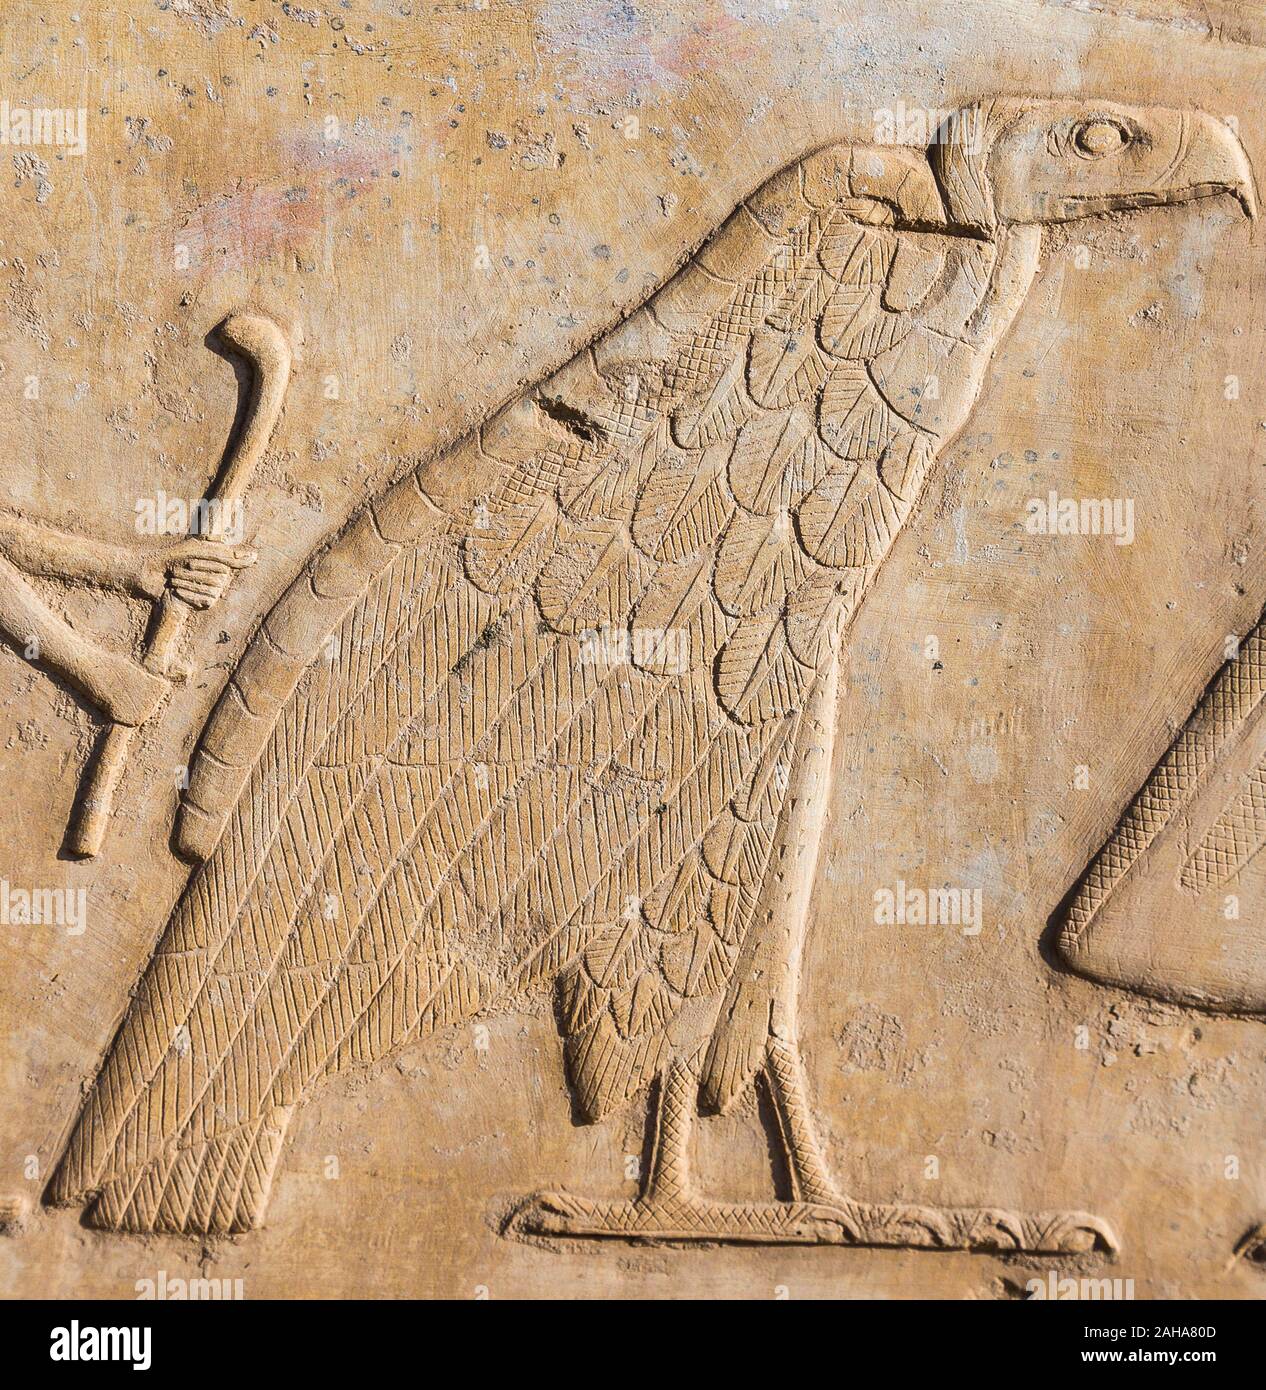 Tebe in Egitto, Tempio di Karnak, museo all'aria aperta, un rilievo raffigurante i nomi di un re. Il serpente e il vulture simboleggiano 2 dee d'Egitto. Foto Stock